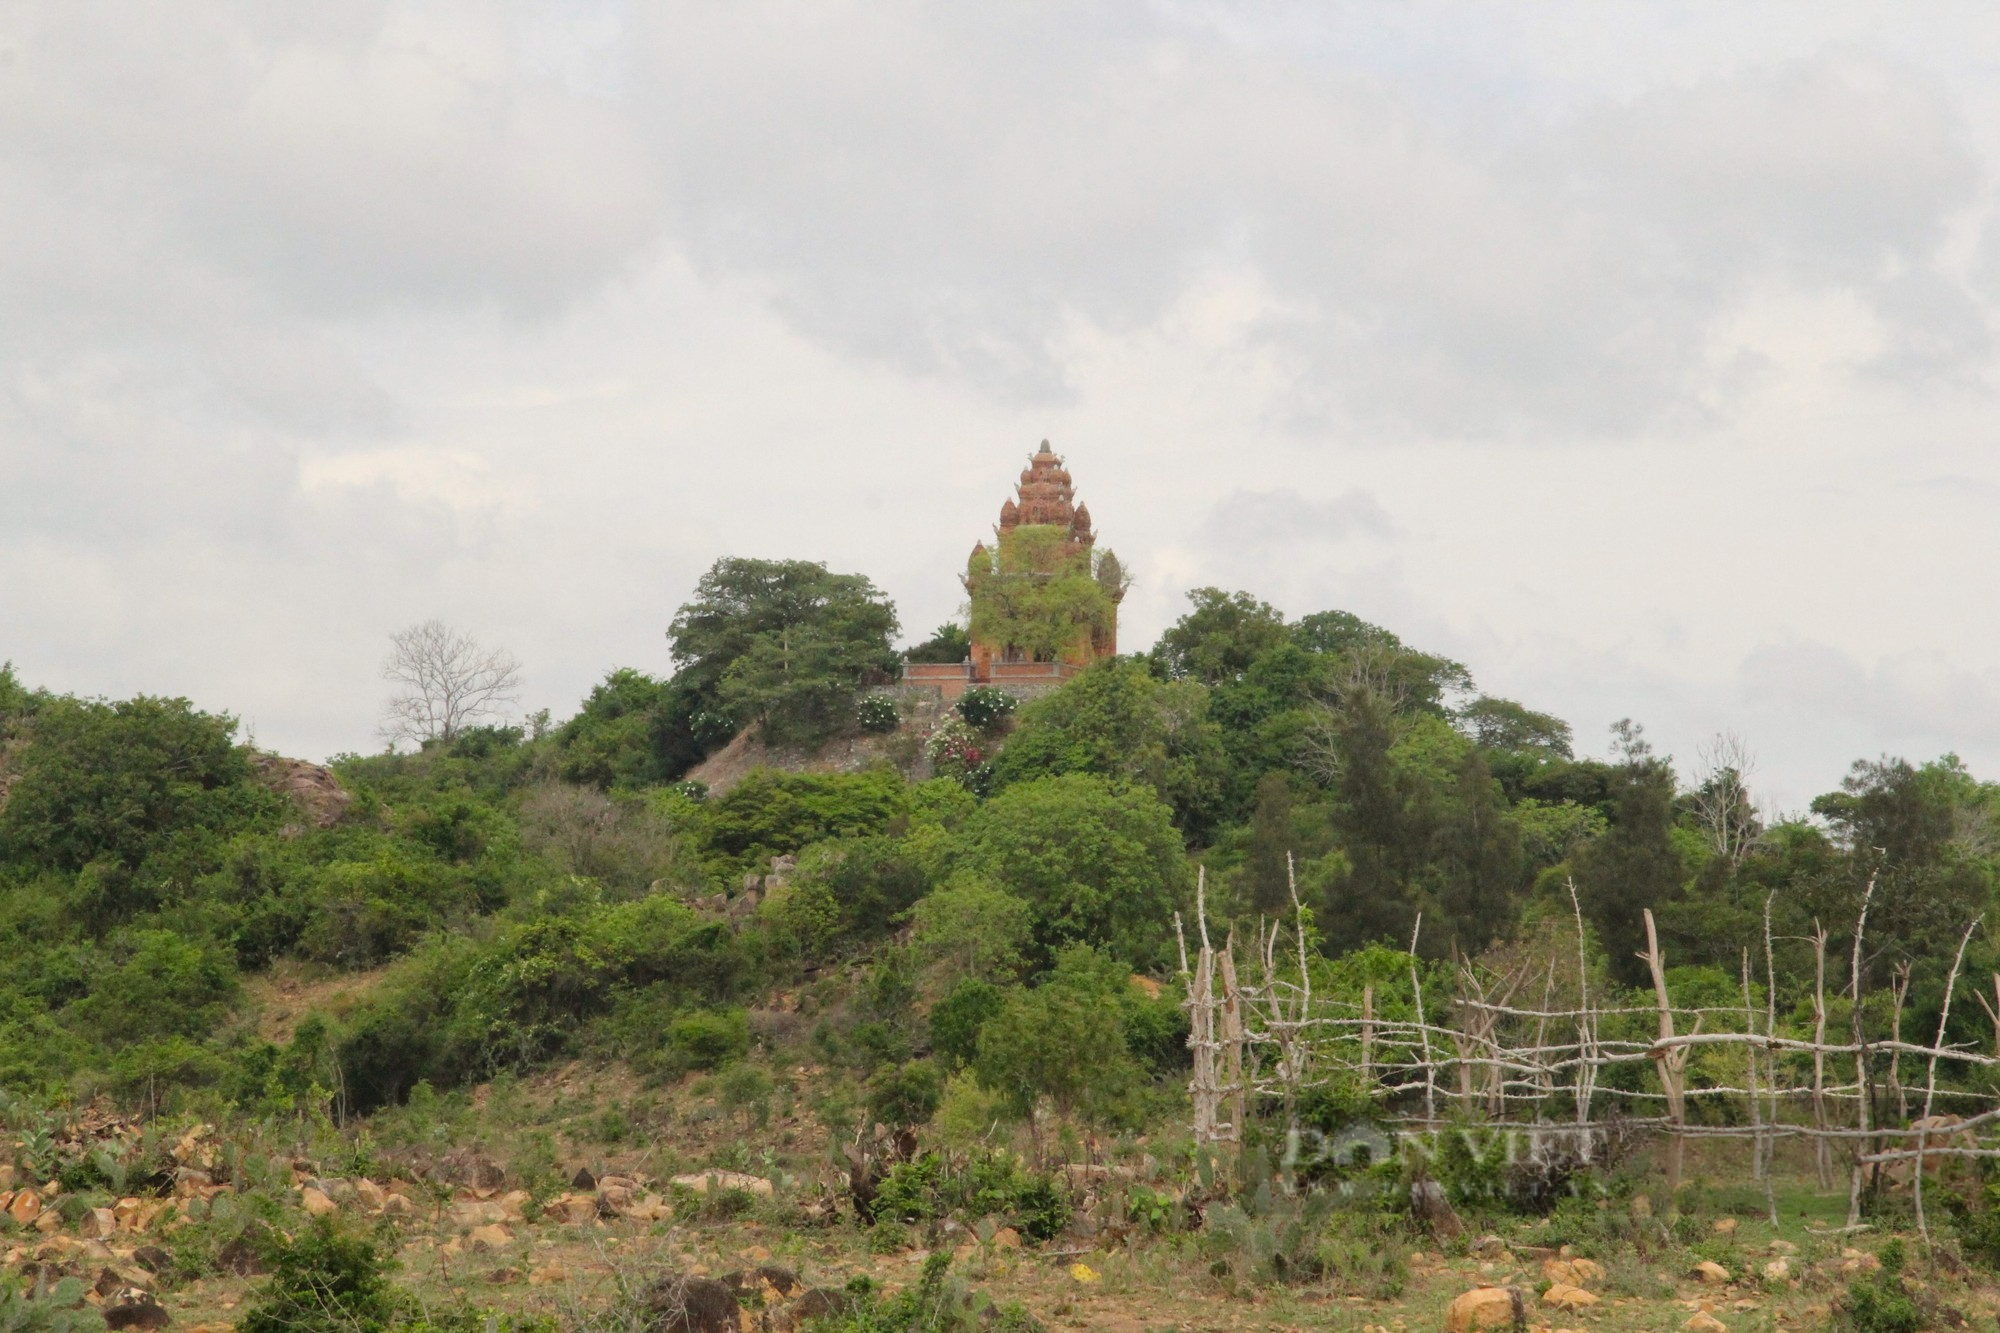 Bí ẩn bảo vật quốc gia bên trong tháp Chăm thờ vị vua cuối cùng của vương quốc Chămpa ở Ninh Thuận - Ảnh 1.